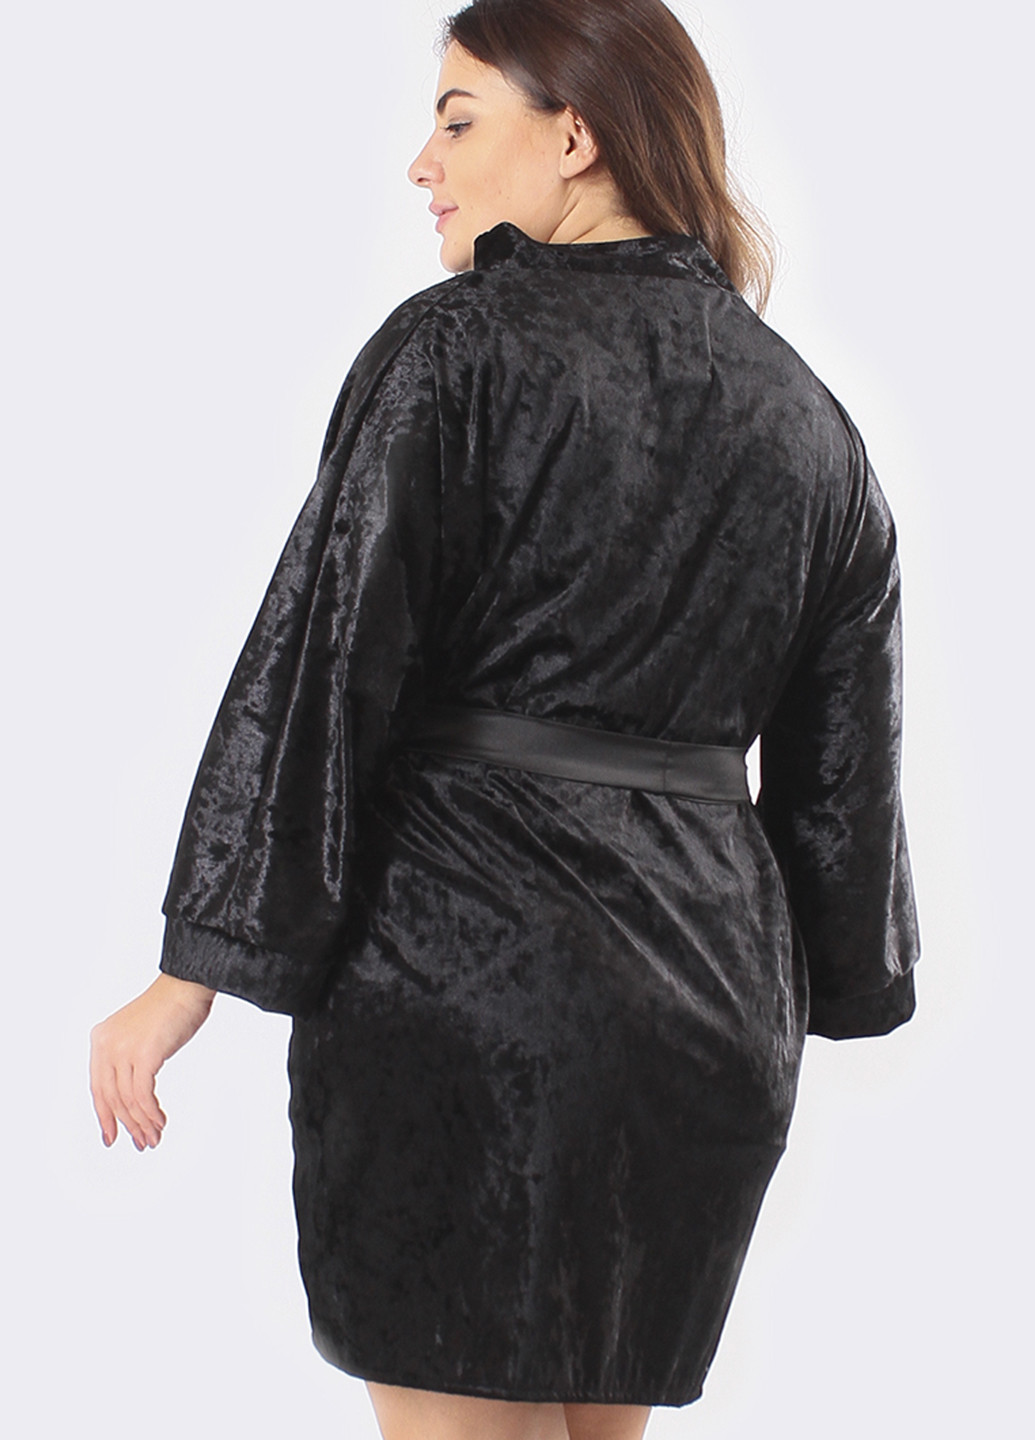 Черный демисезонный комплект (ночная рубашка, халат) Ghazel